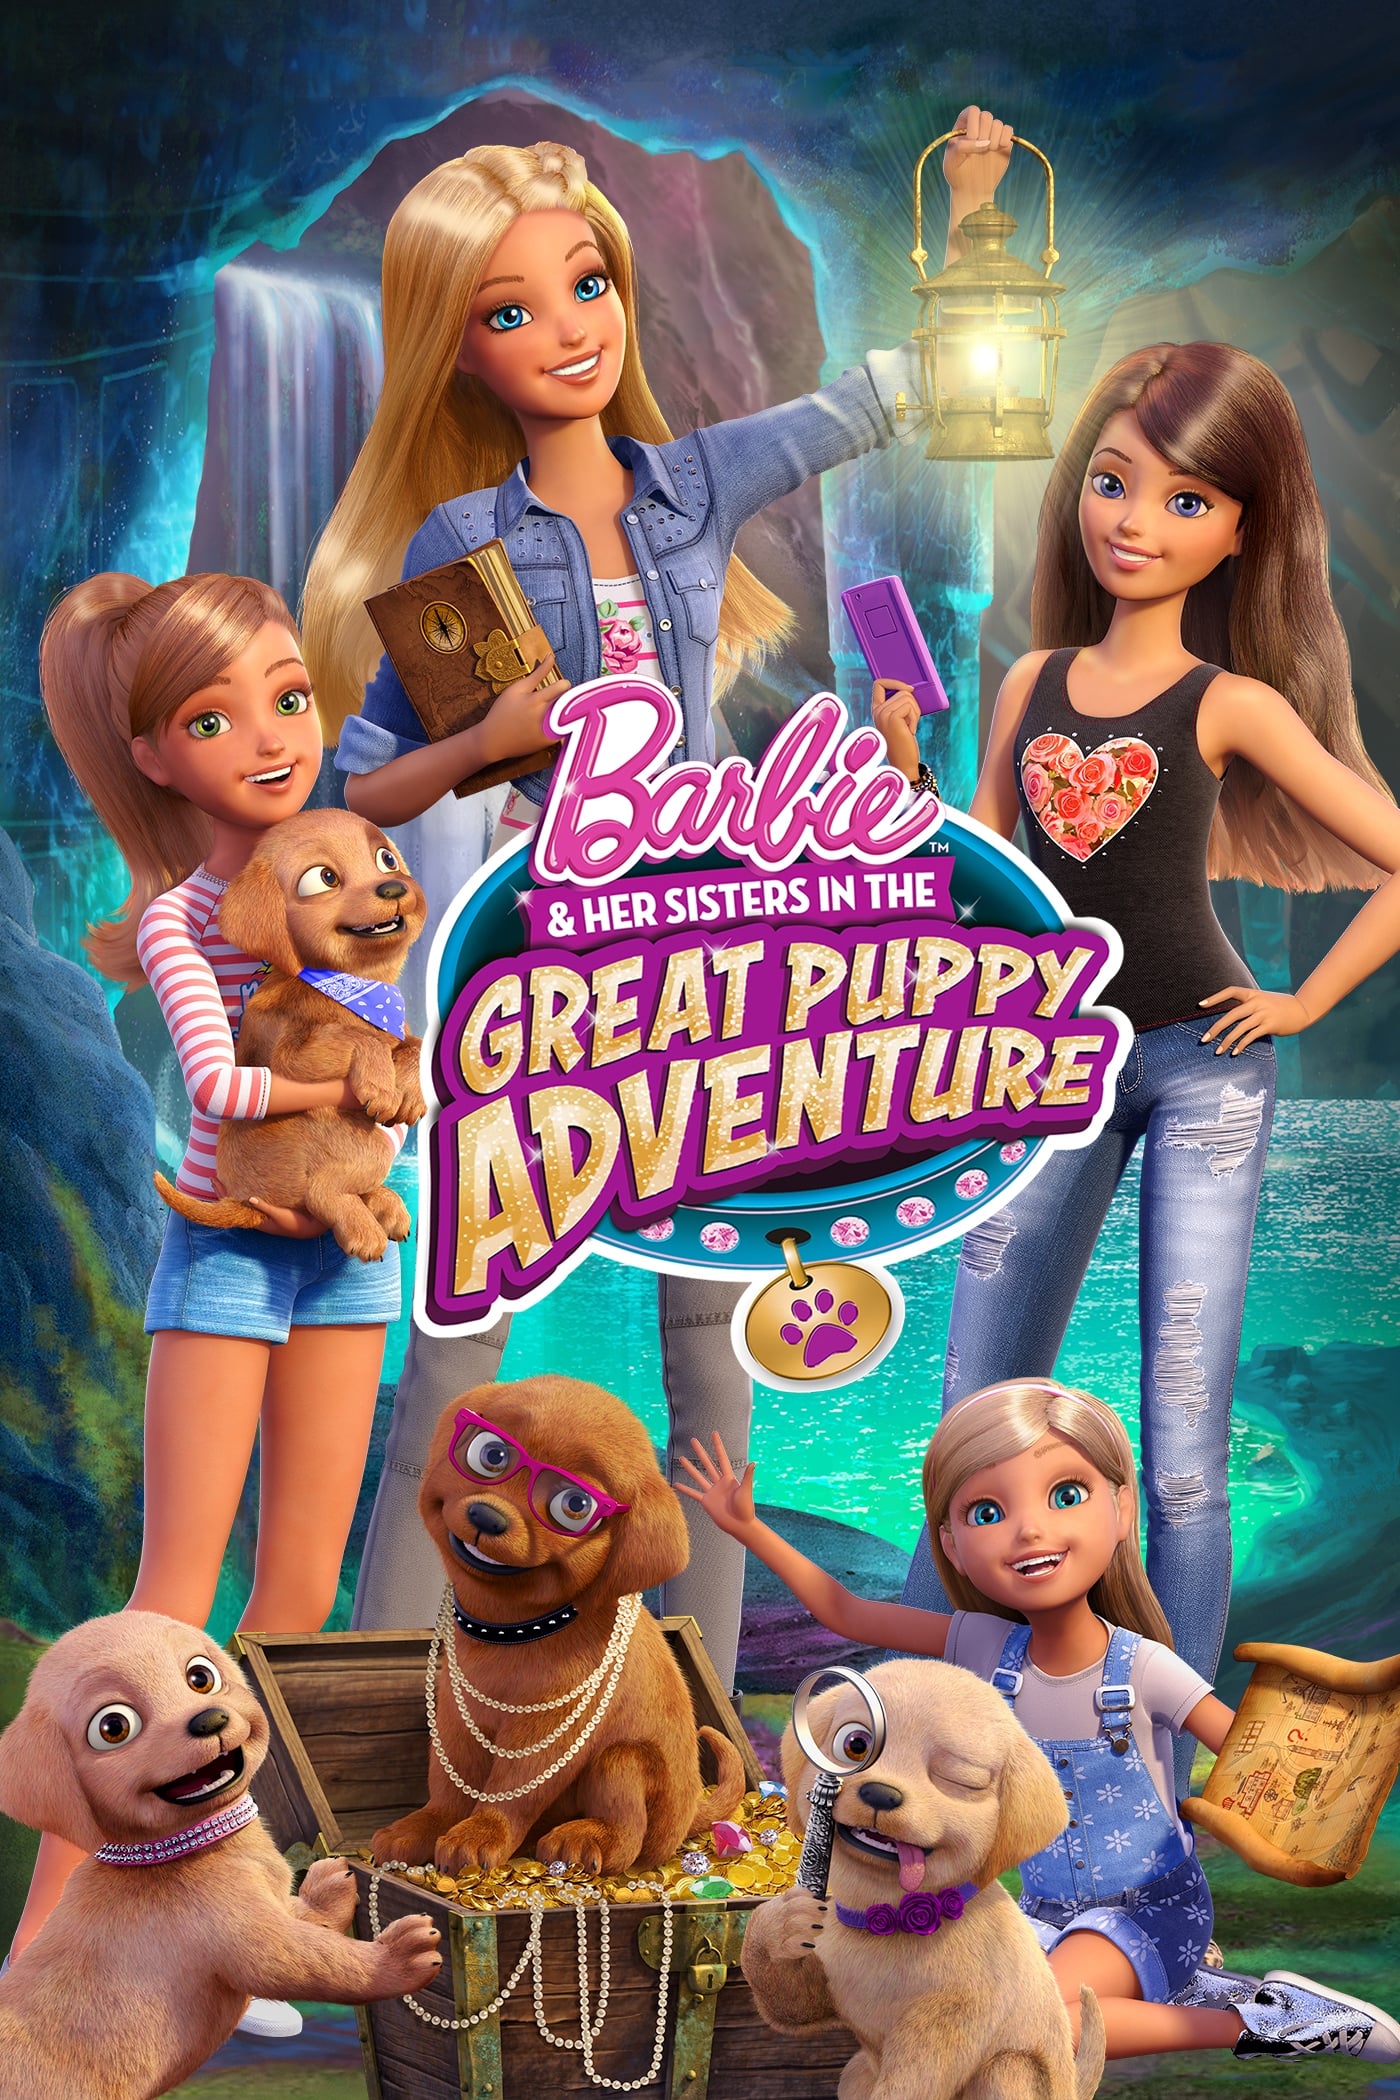 Barbie y sus hermanas: Perritos en busca del tesoro